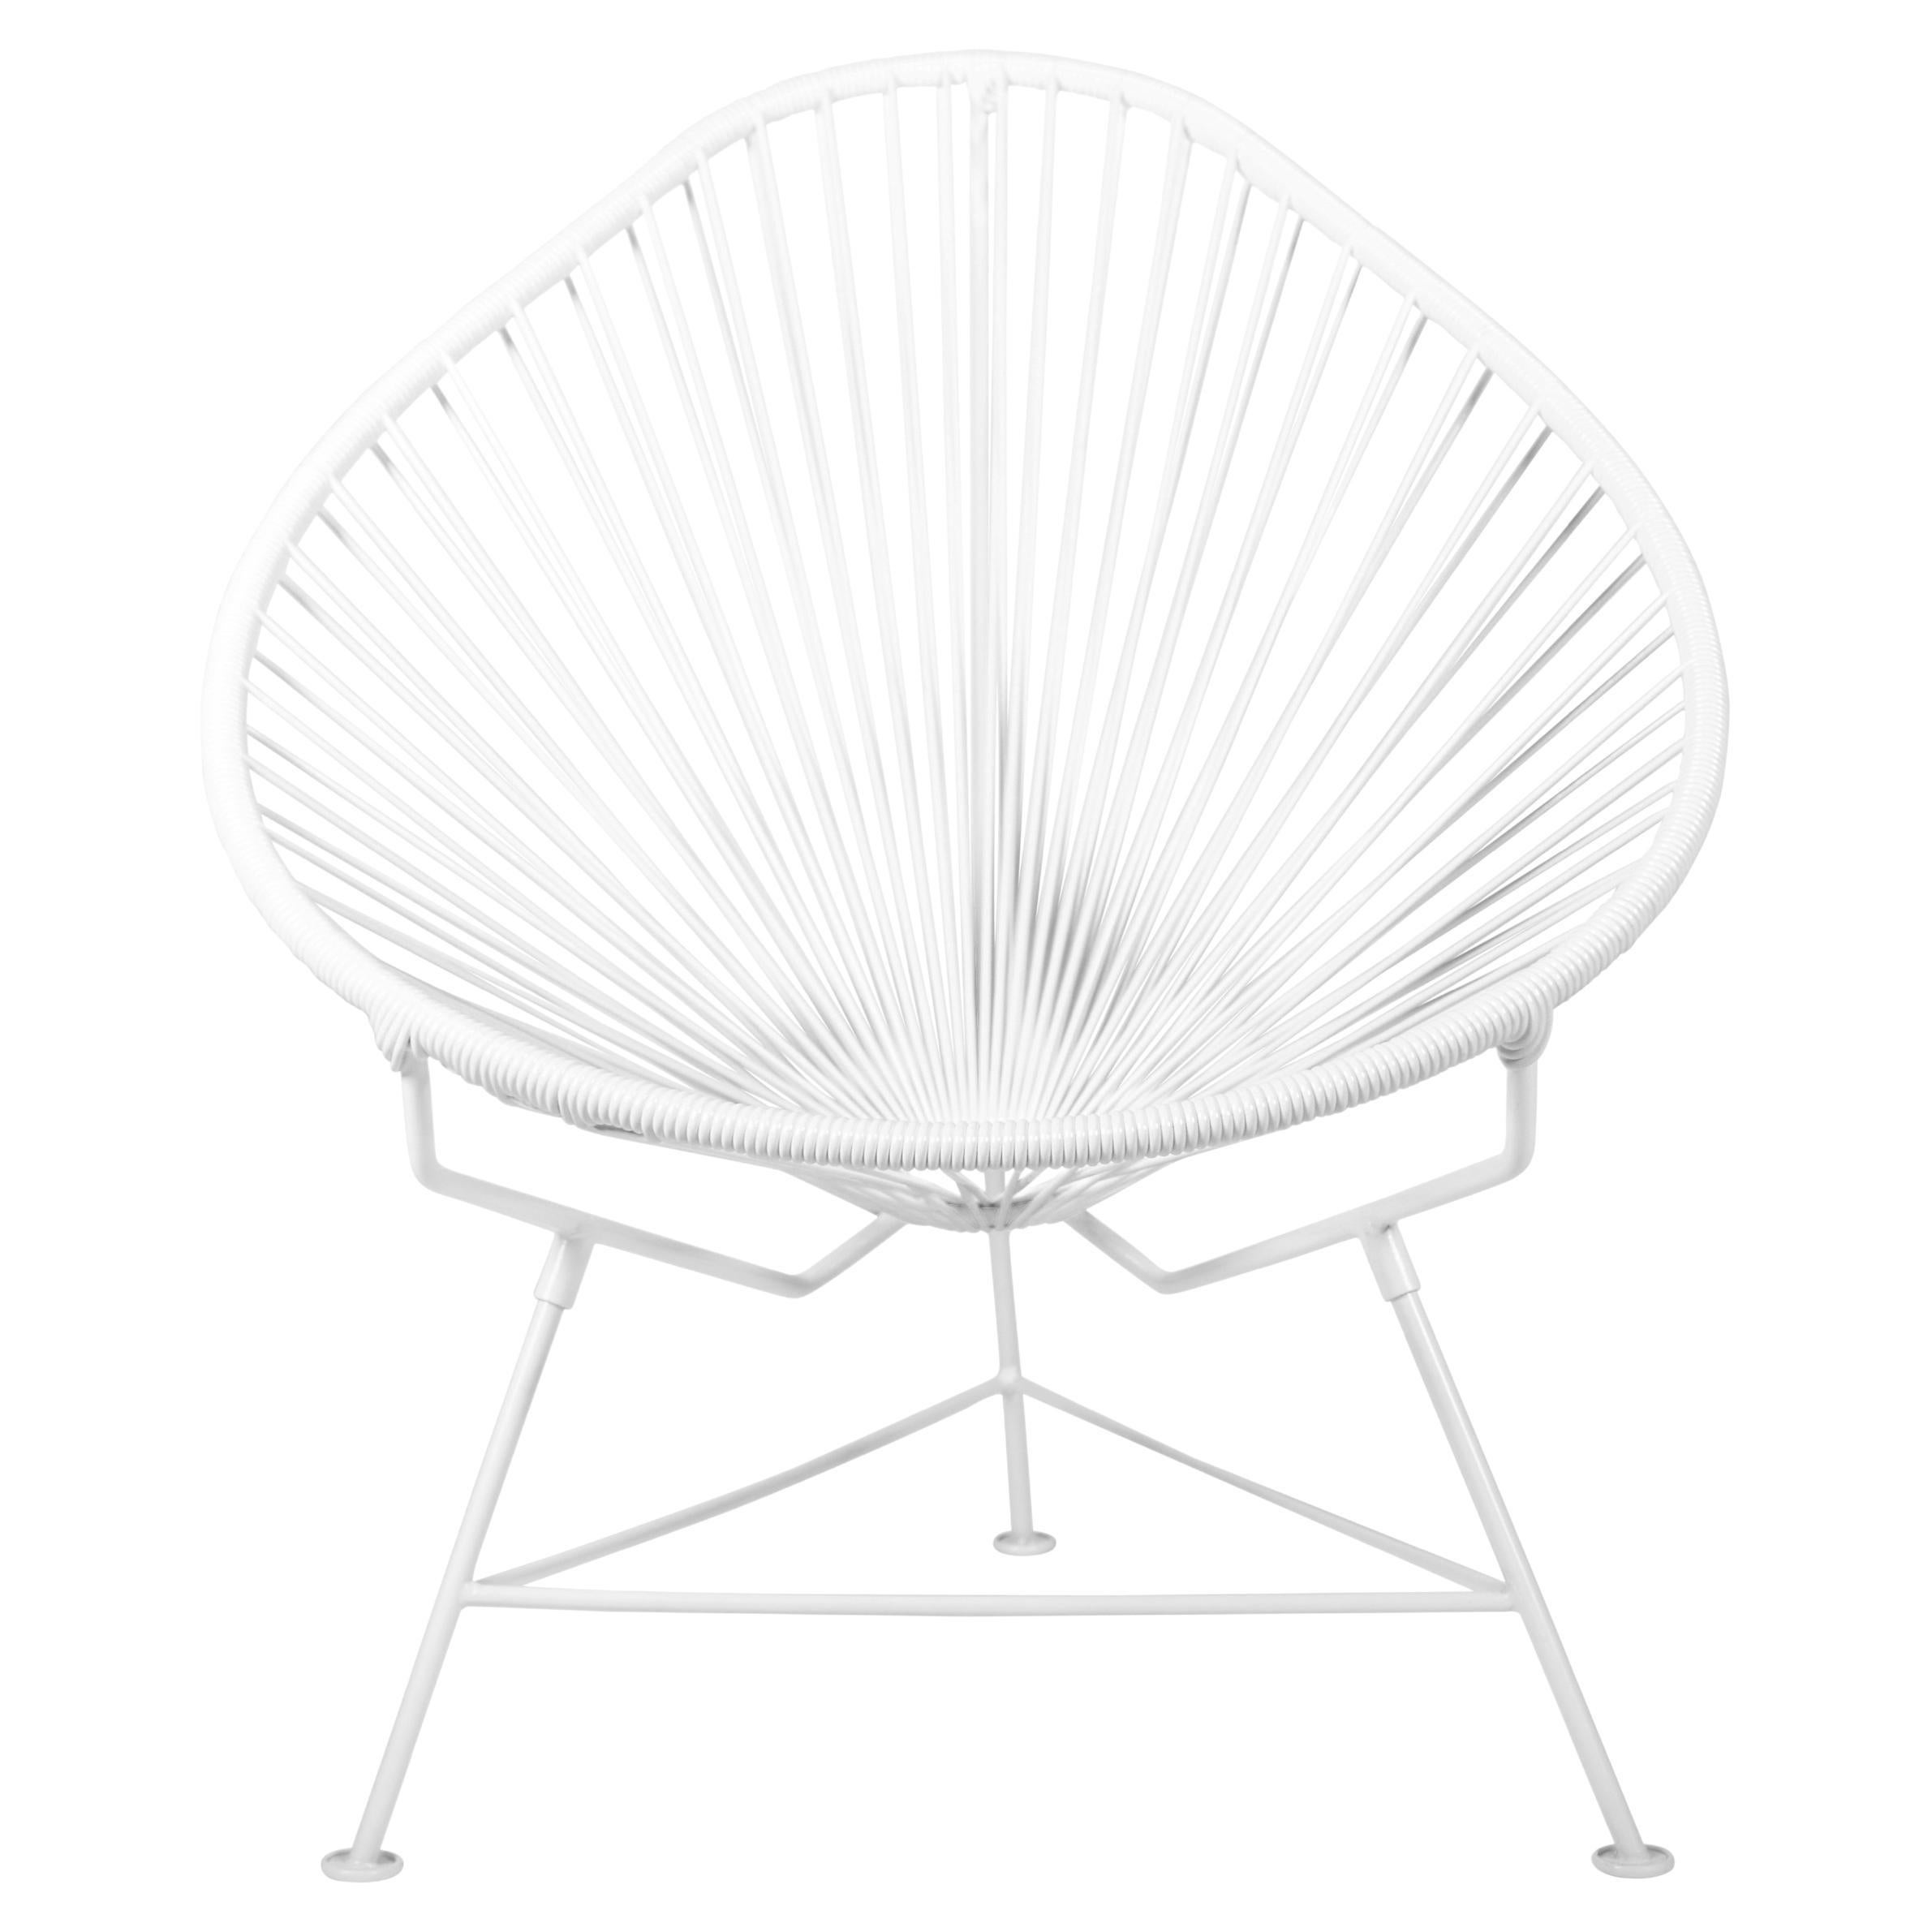 Innit Designs chaise Acapulco tissée en blanc sur cadre blanc